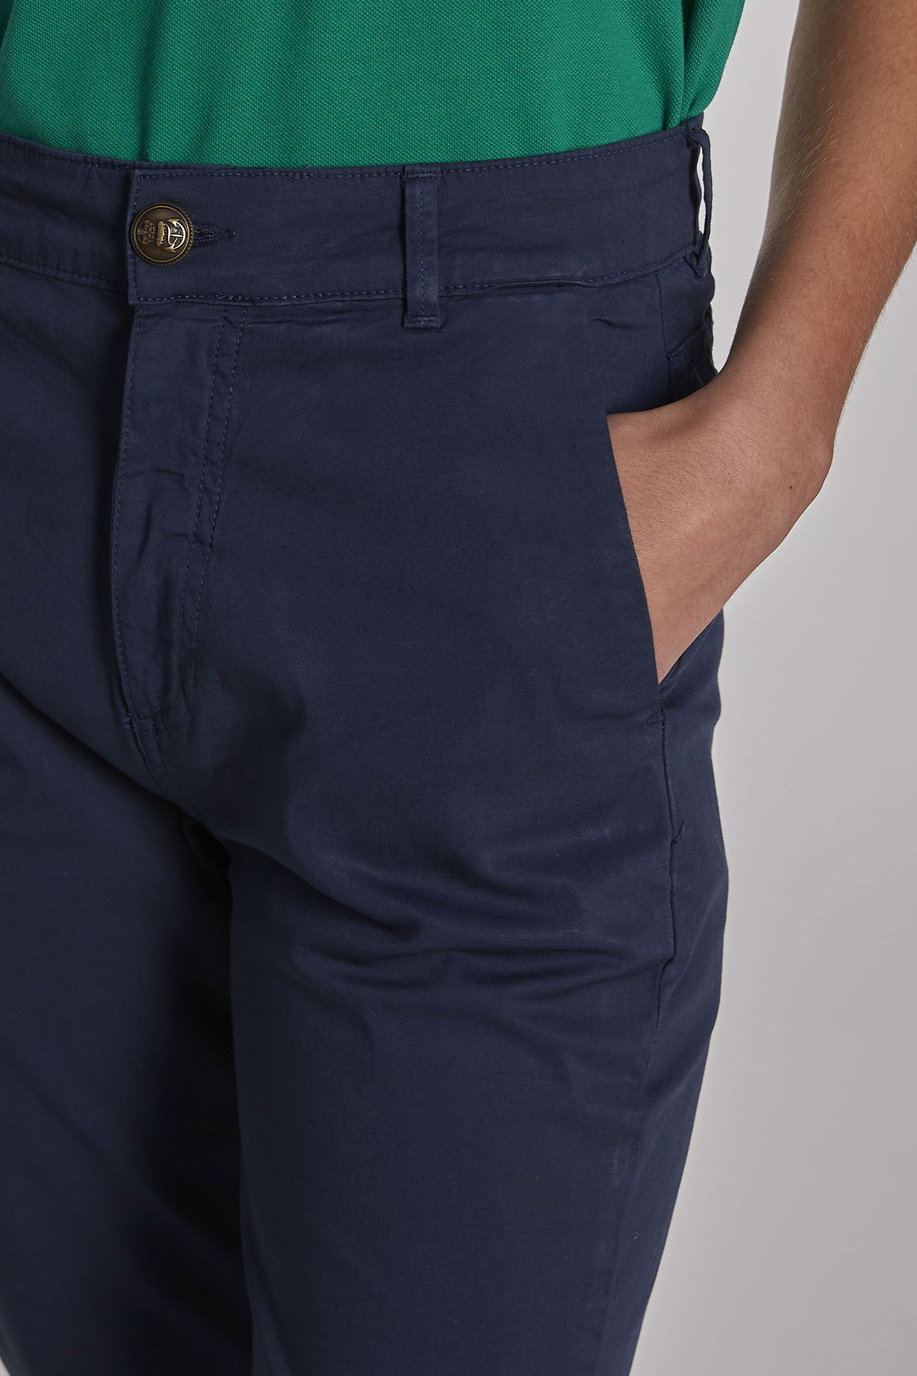 Pantalone da donna modello 5 tasche in cotone regular fit